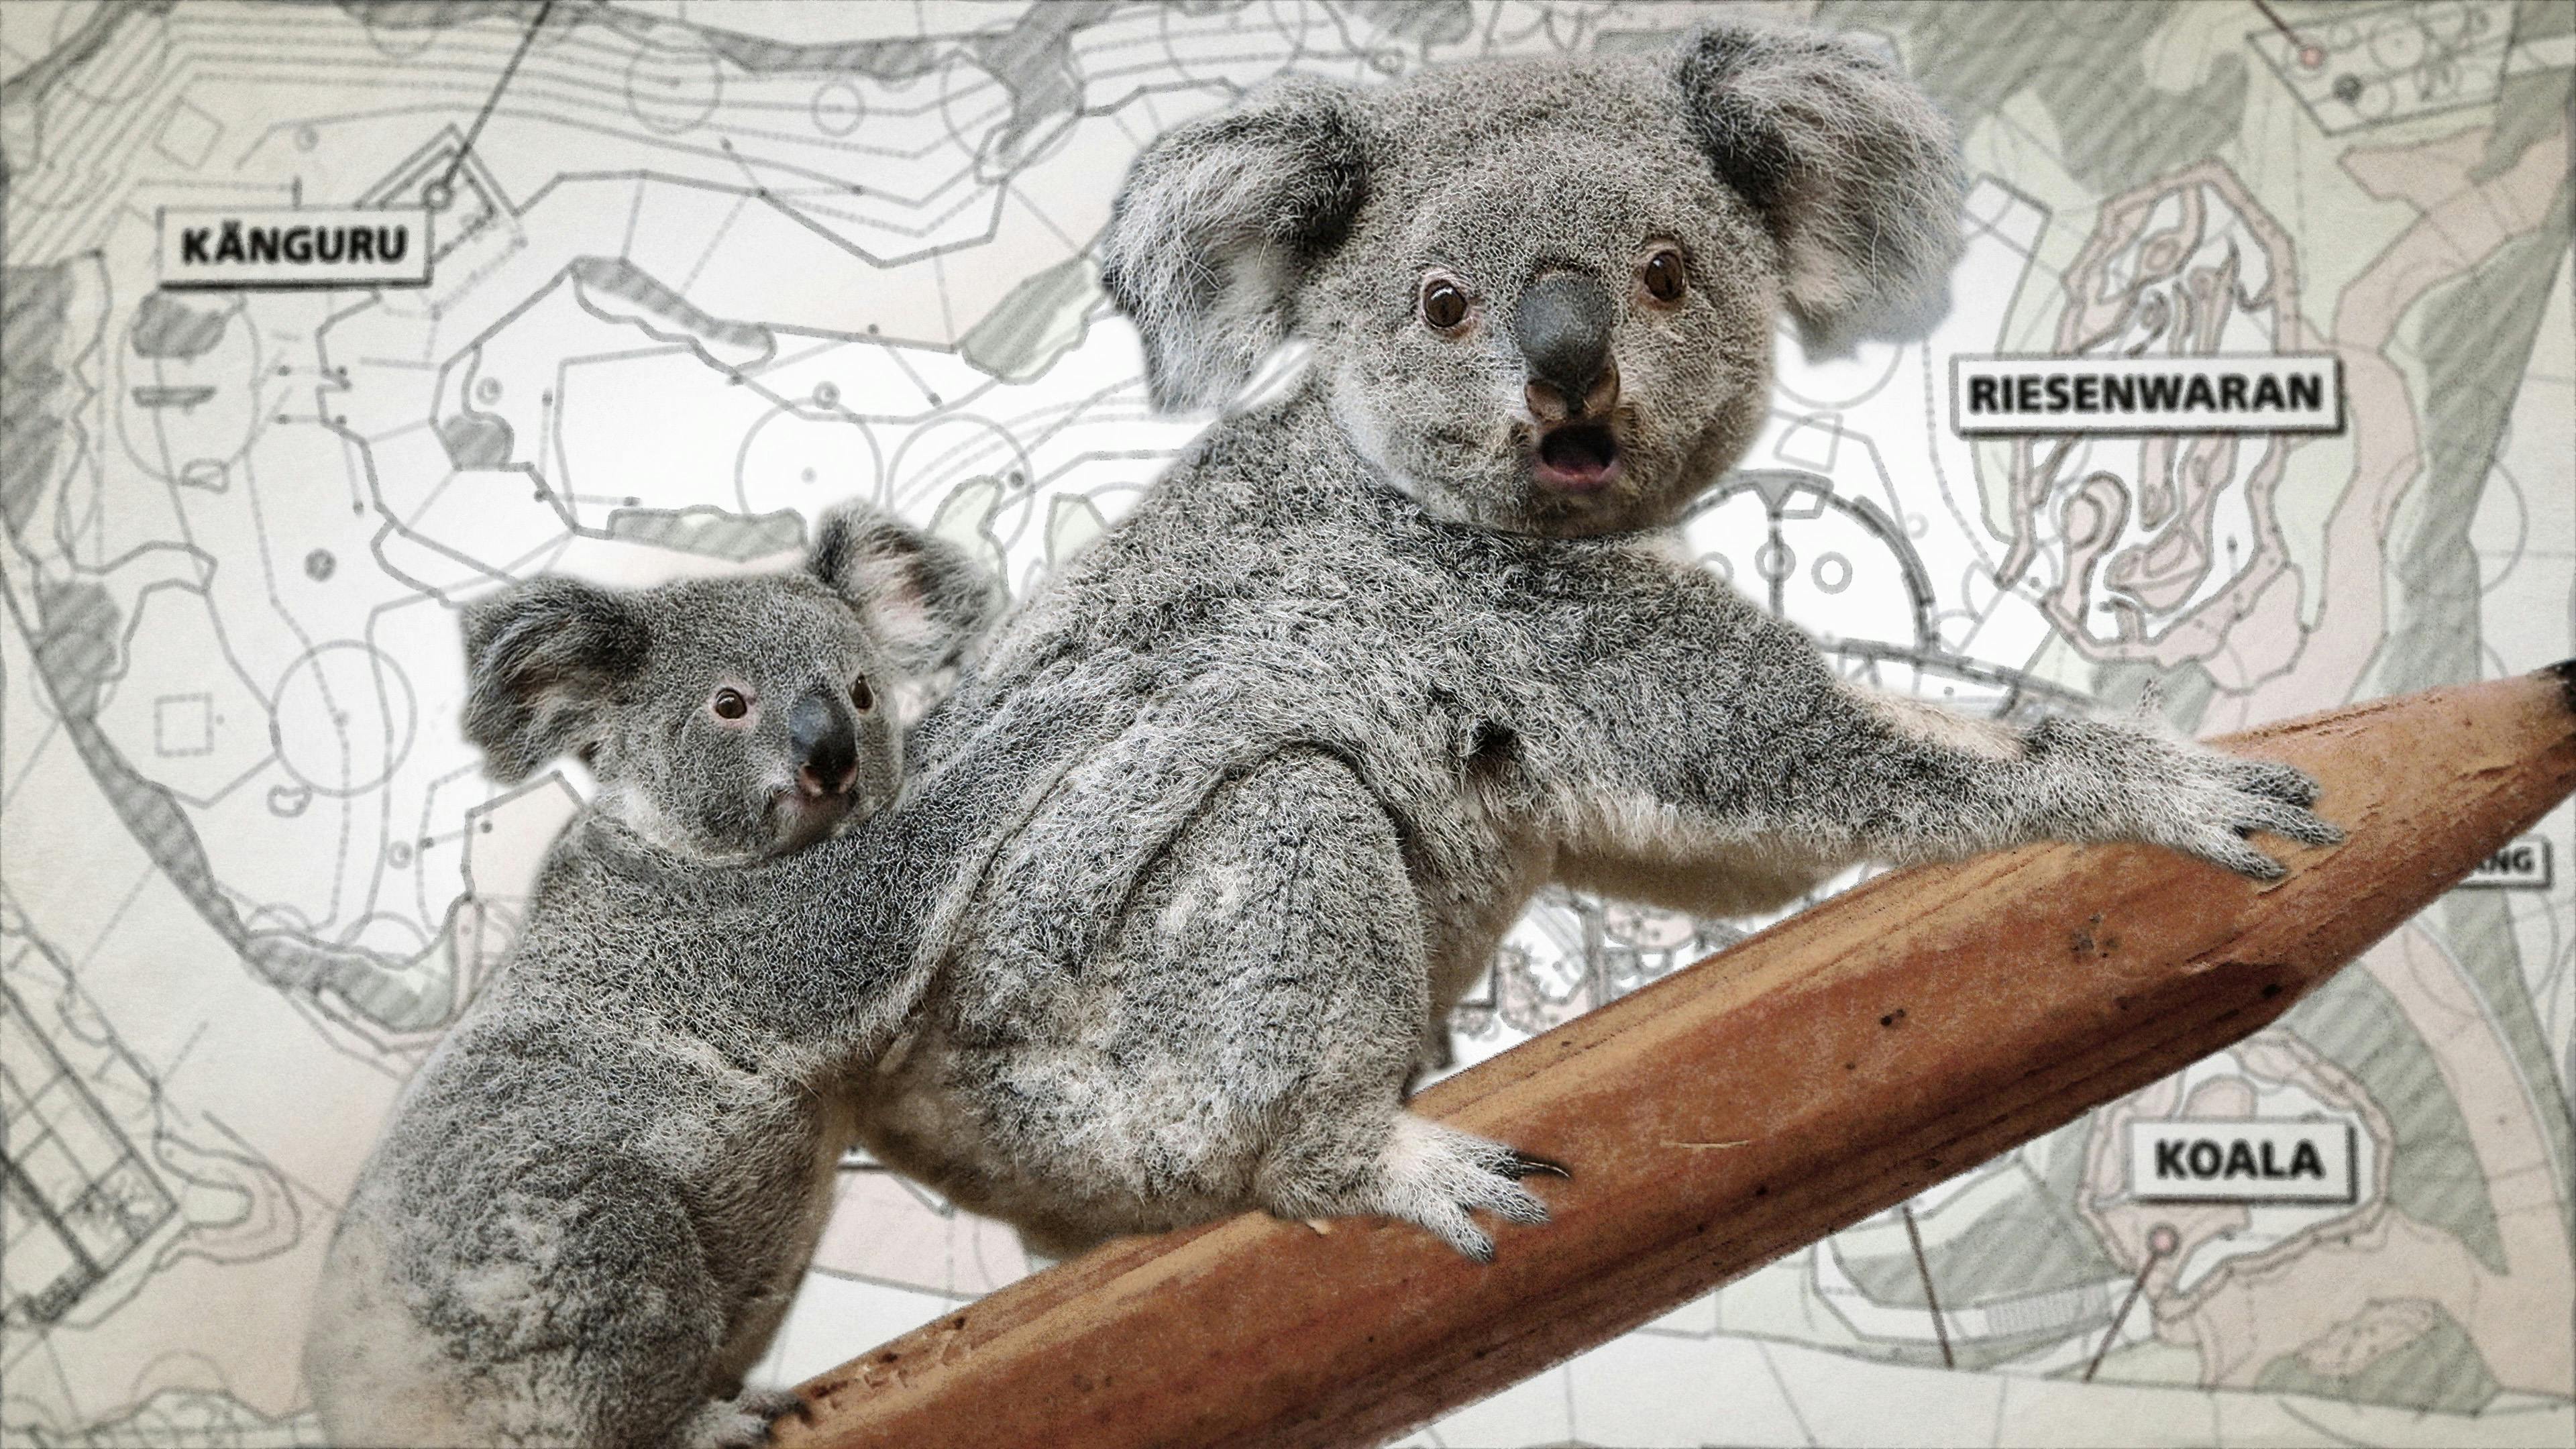 Koala needs tree Still